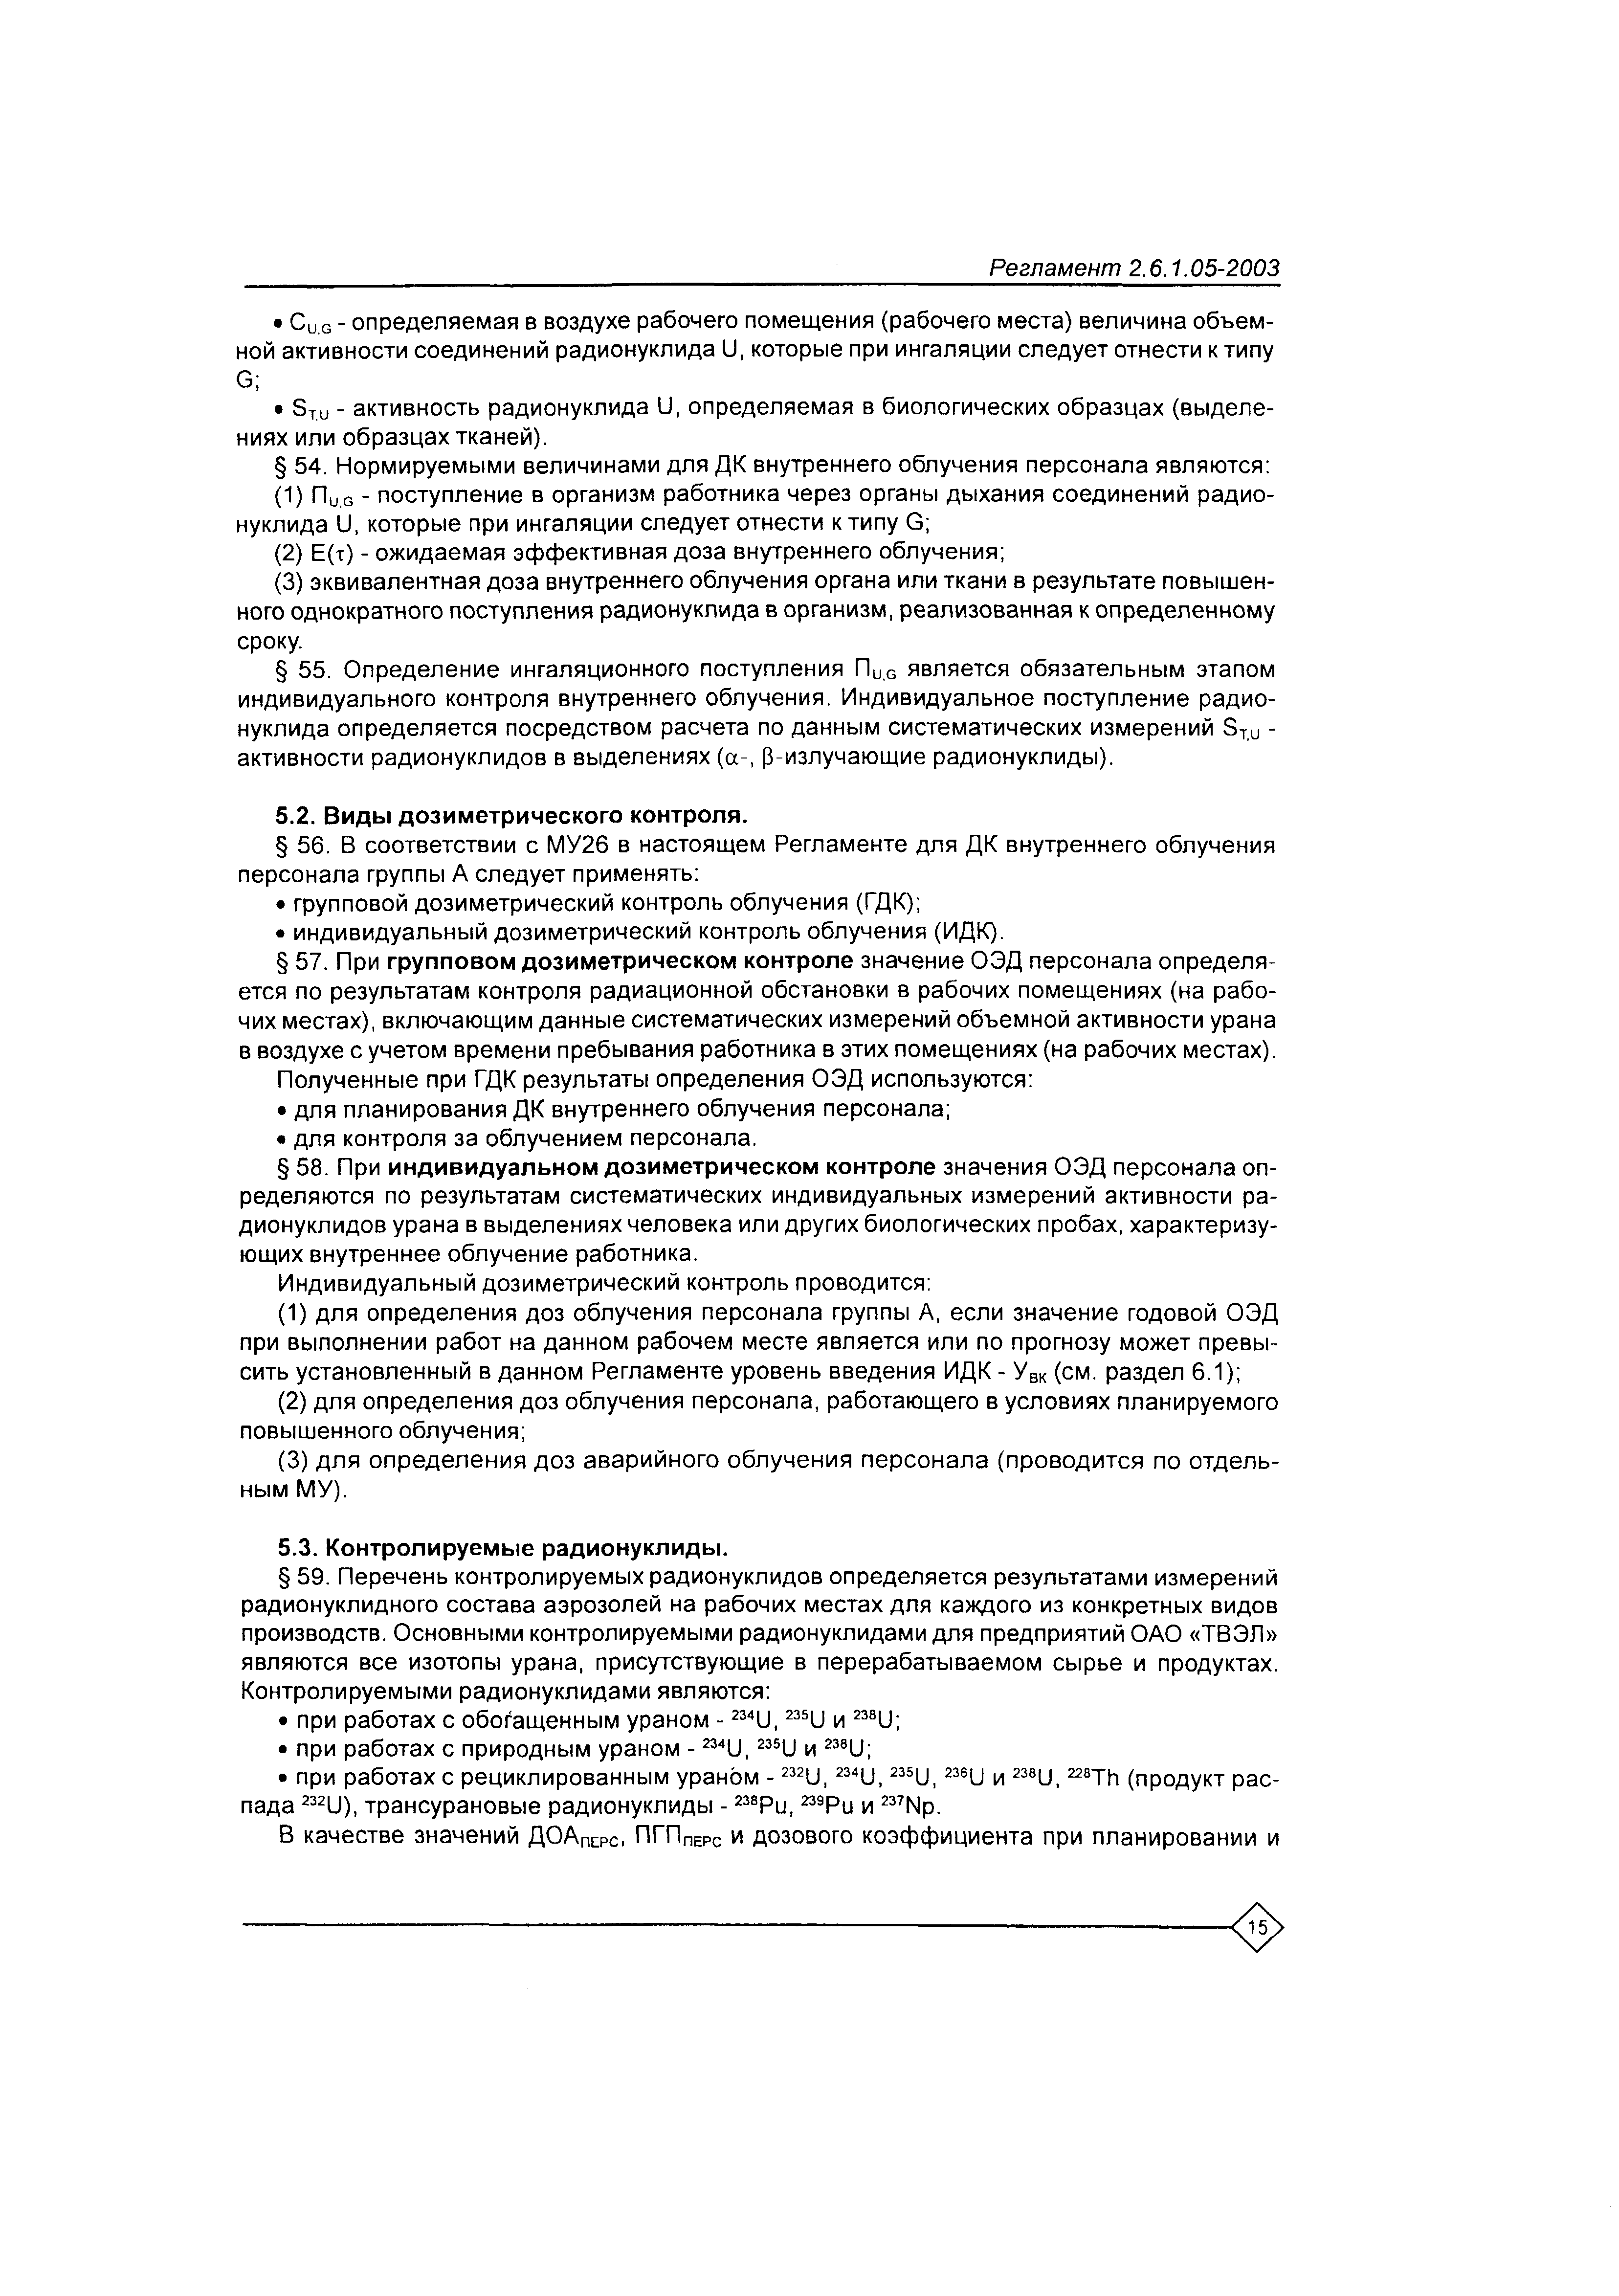 Регламент 2.6.1.05-2003